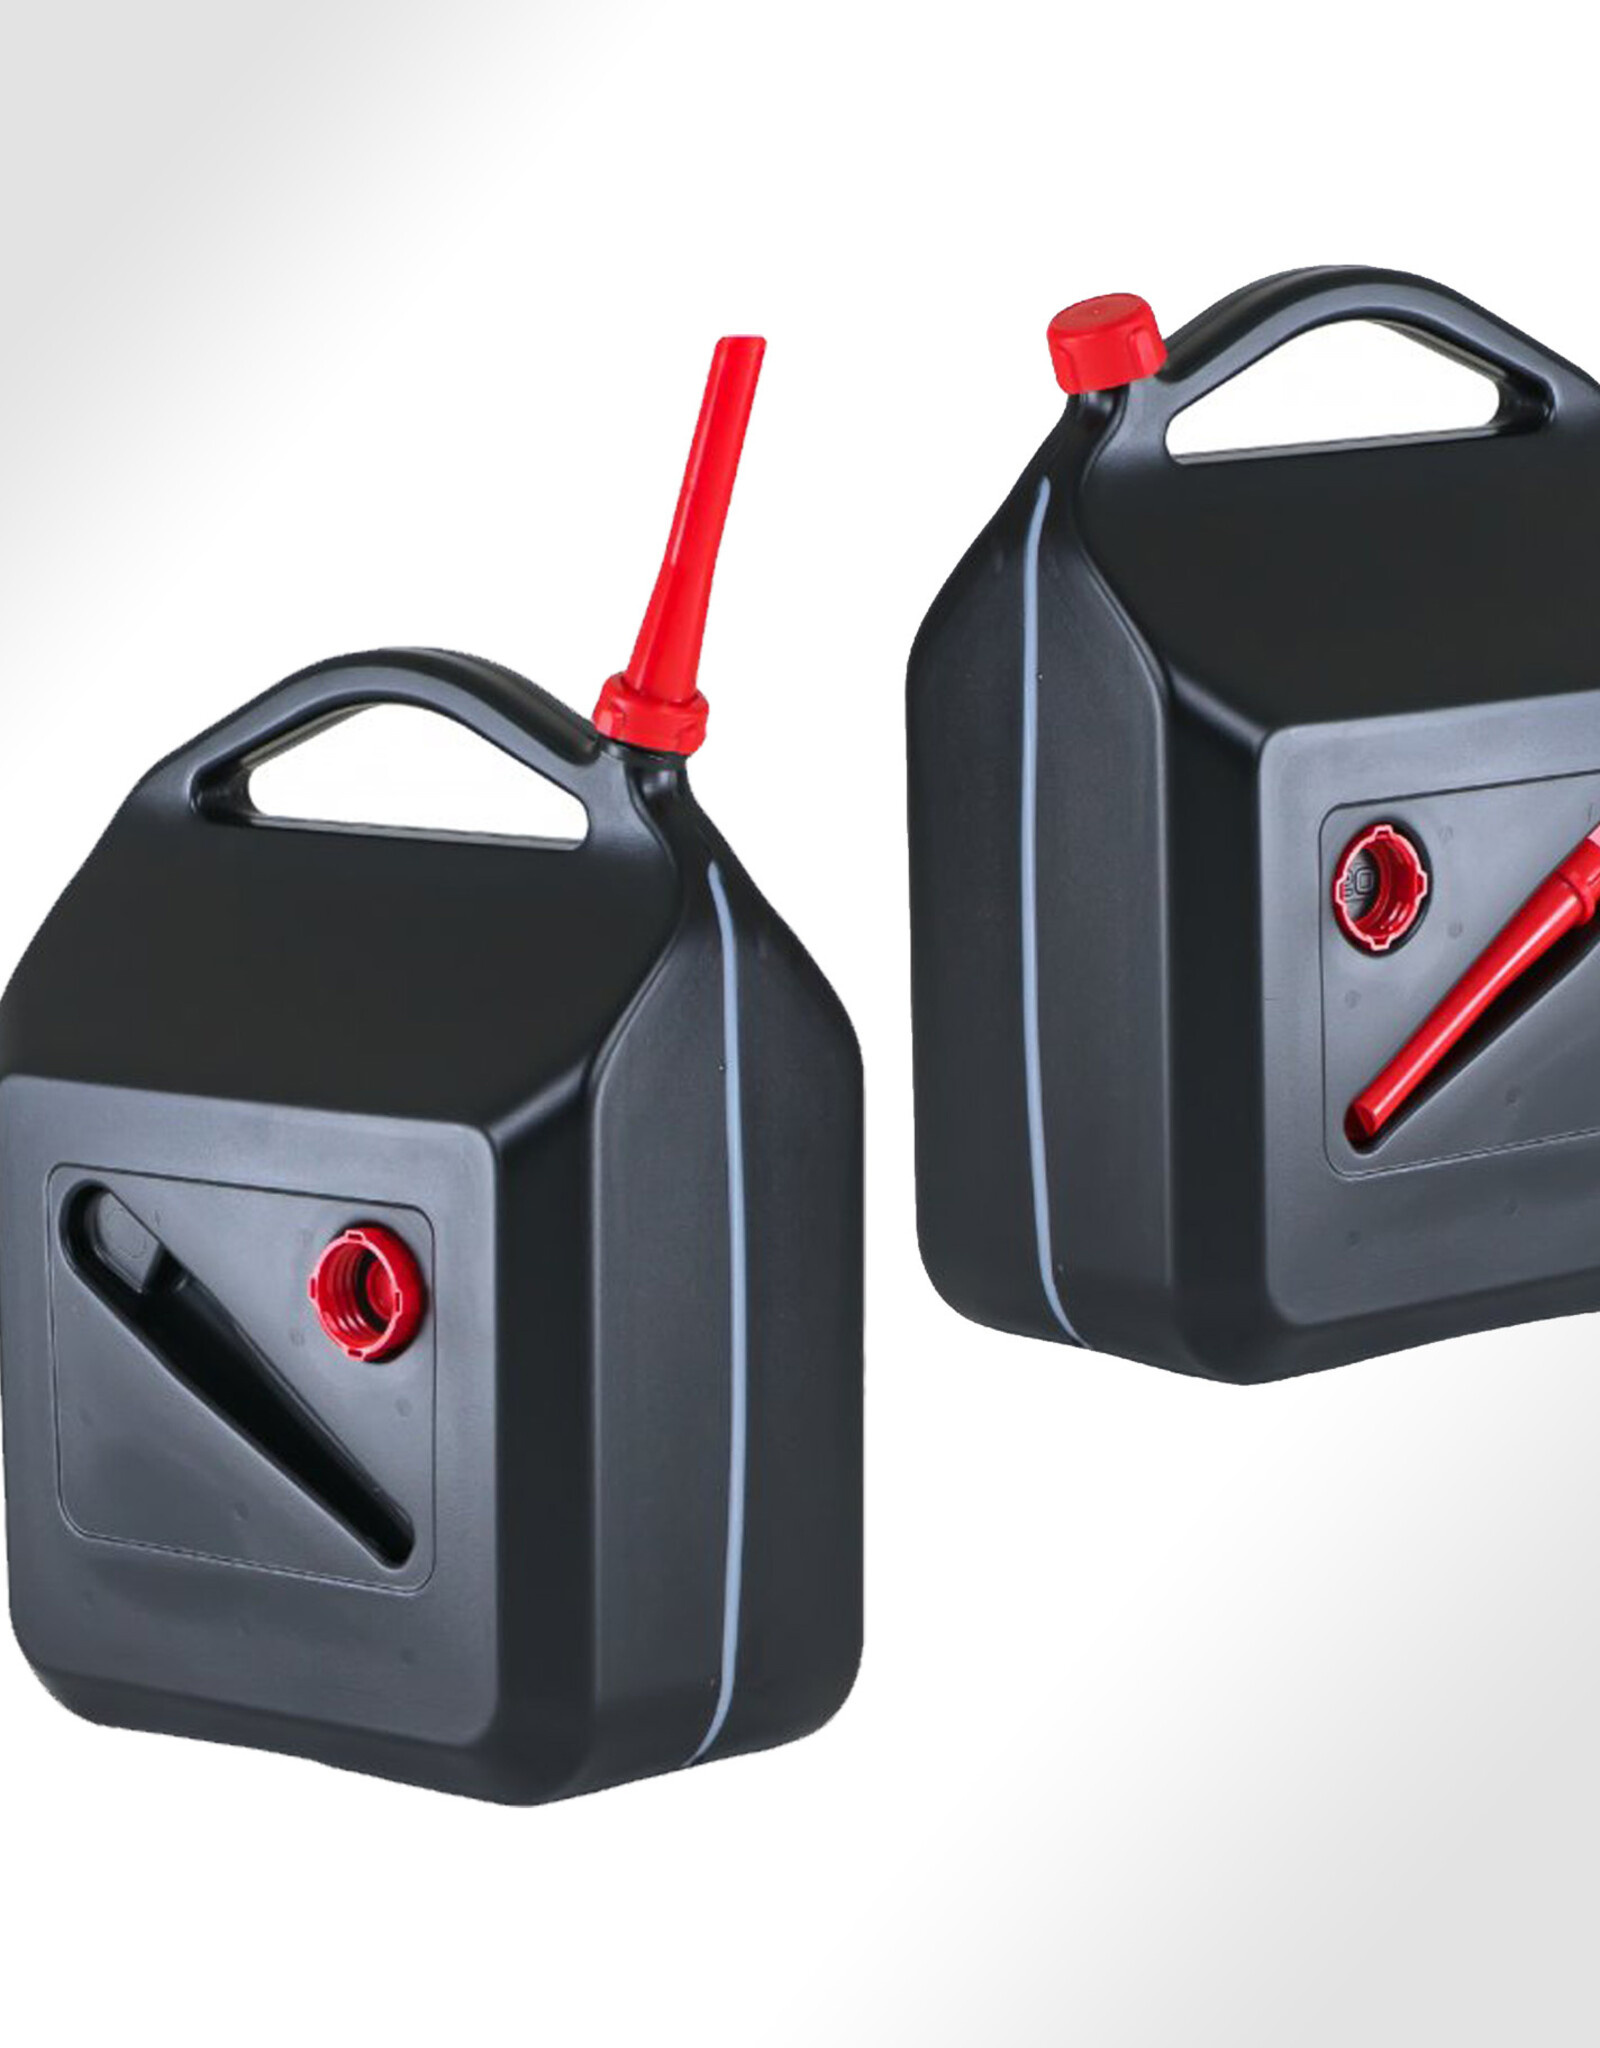 Jerrycanshop - Stapelbarer 1 Liter UN Kanister - Kraftstoff